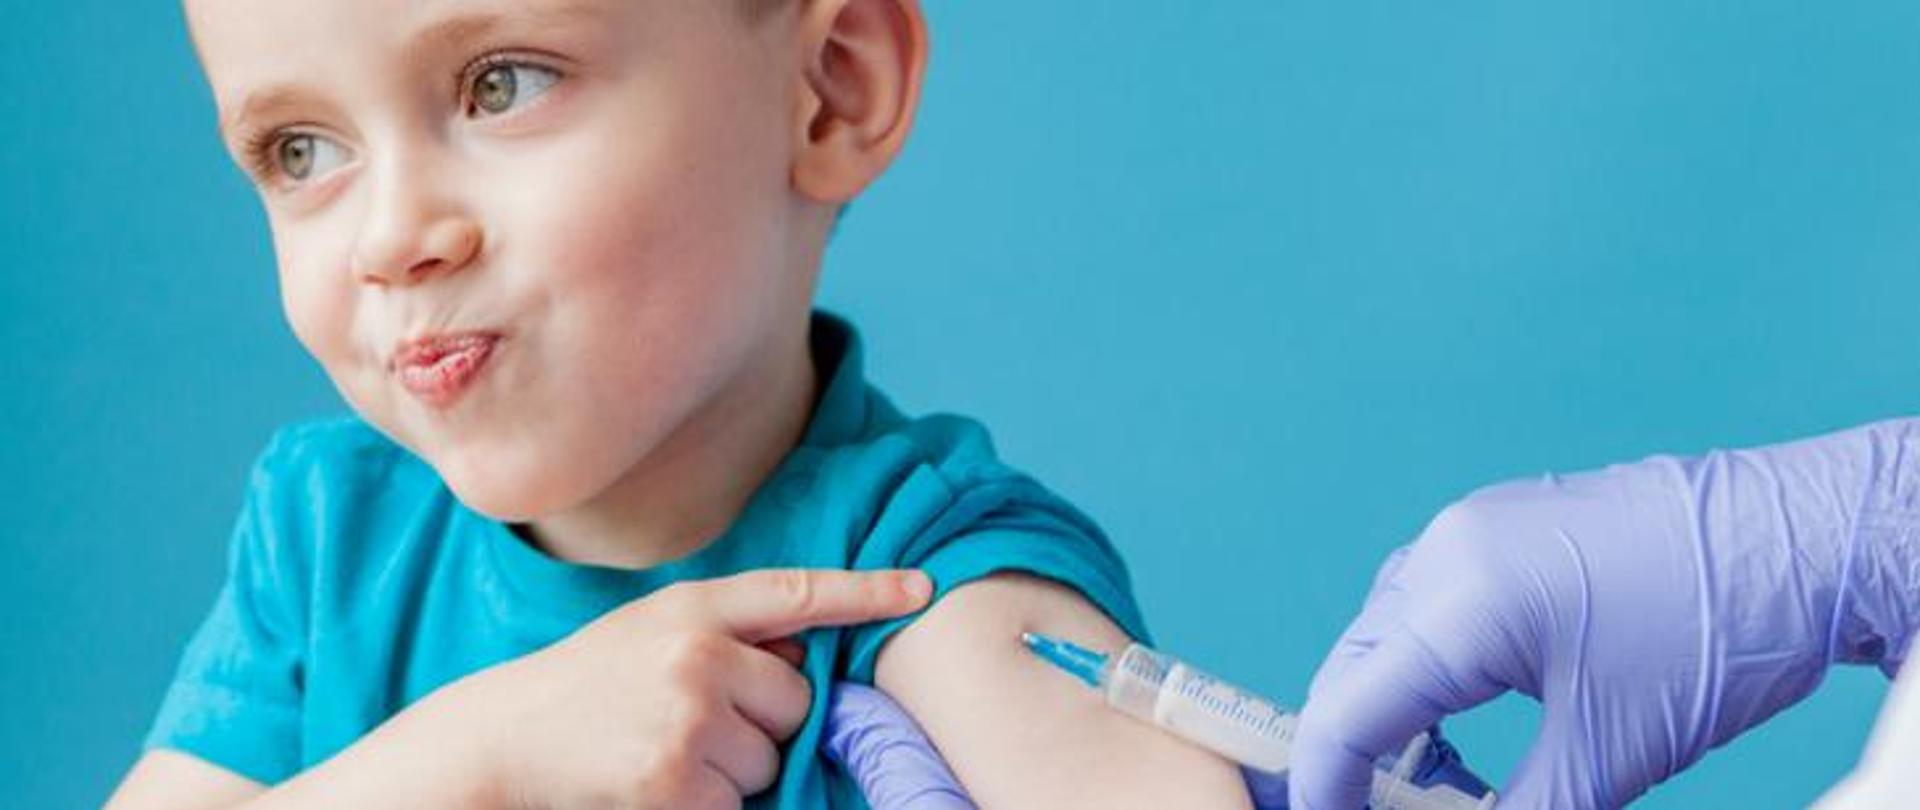 Mały chłopiec w trakcie zabiegu szczepienia